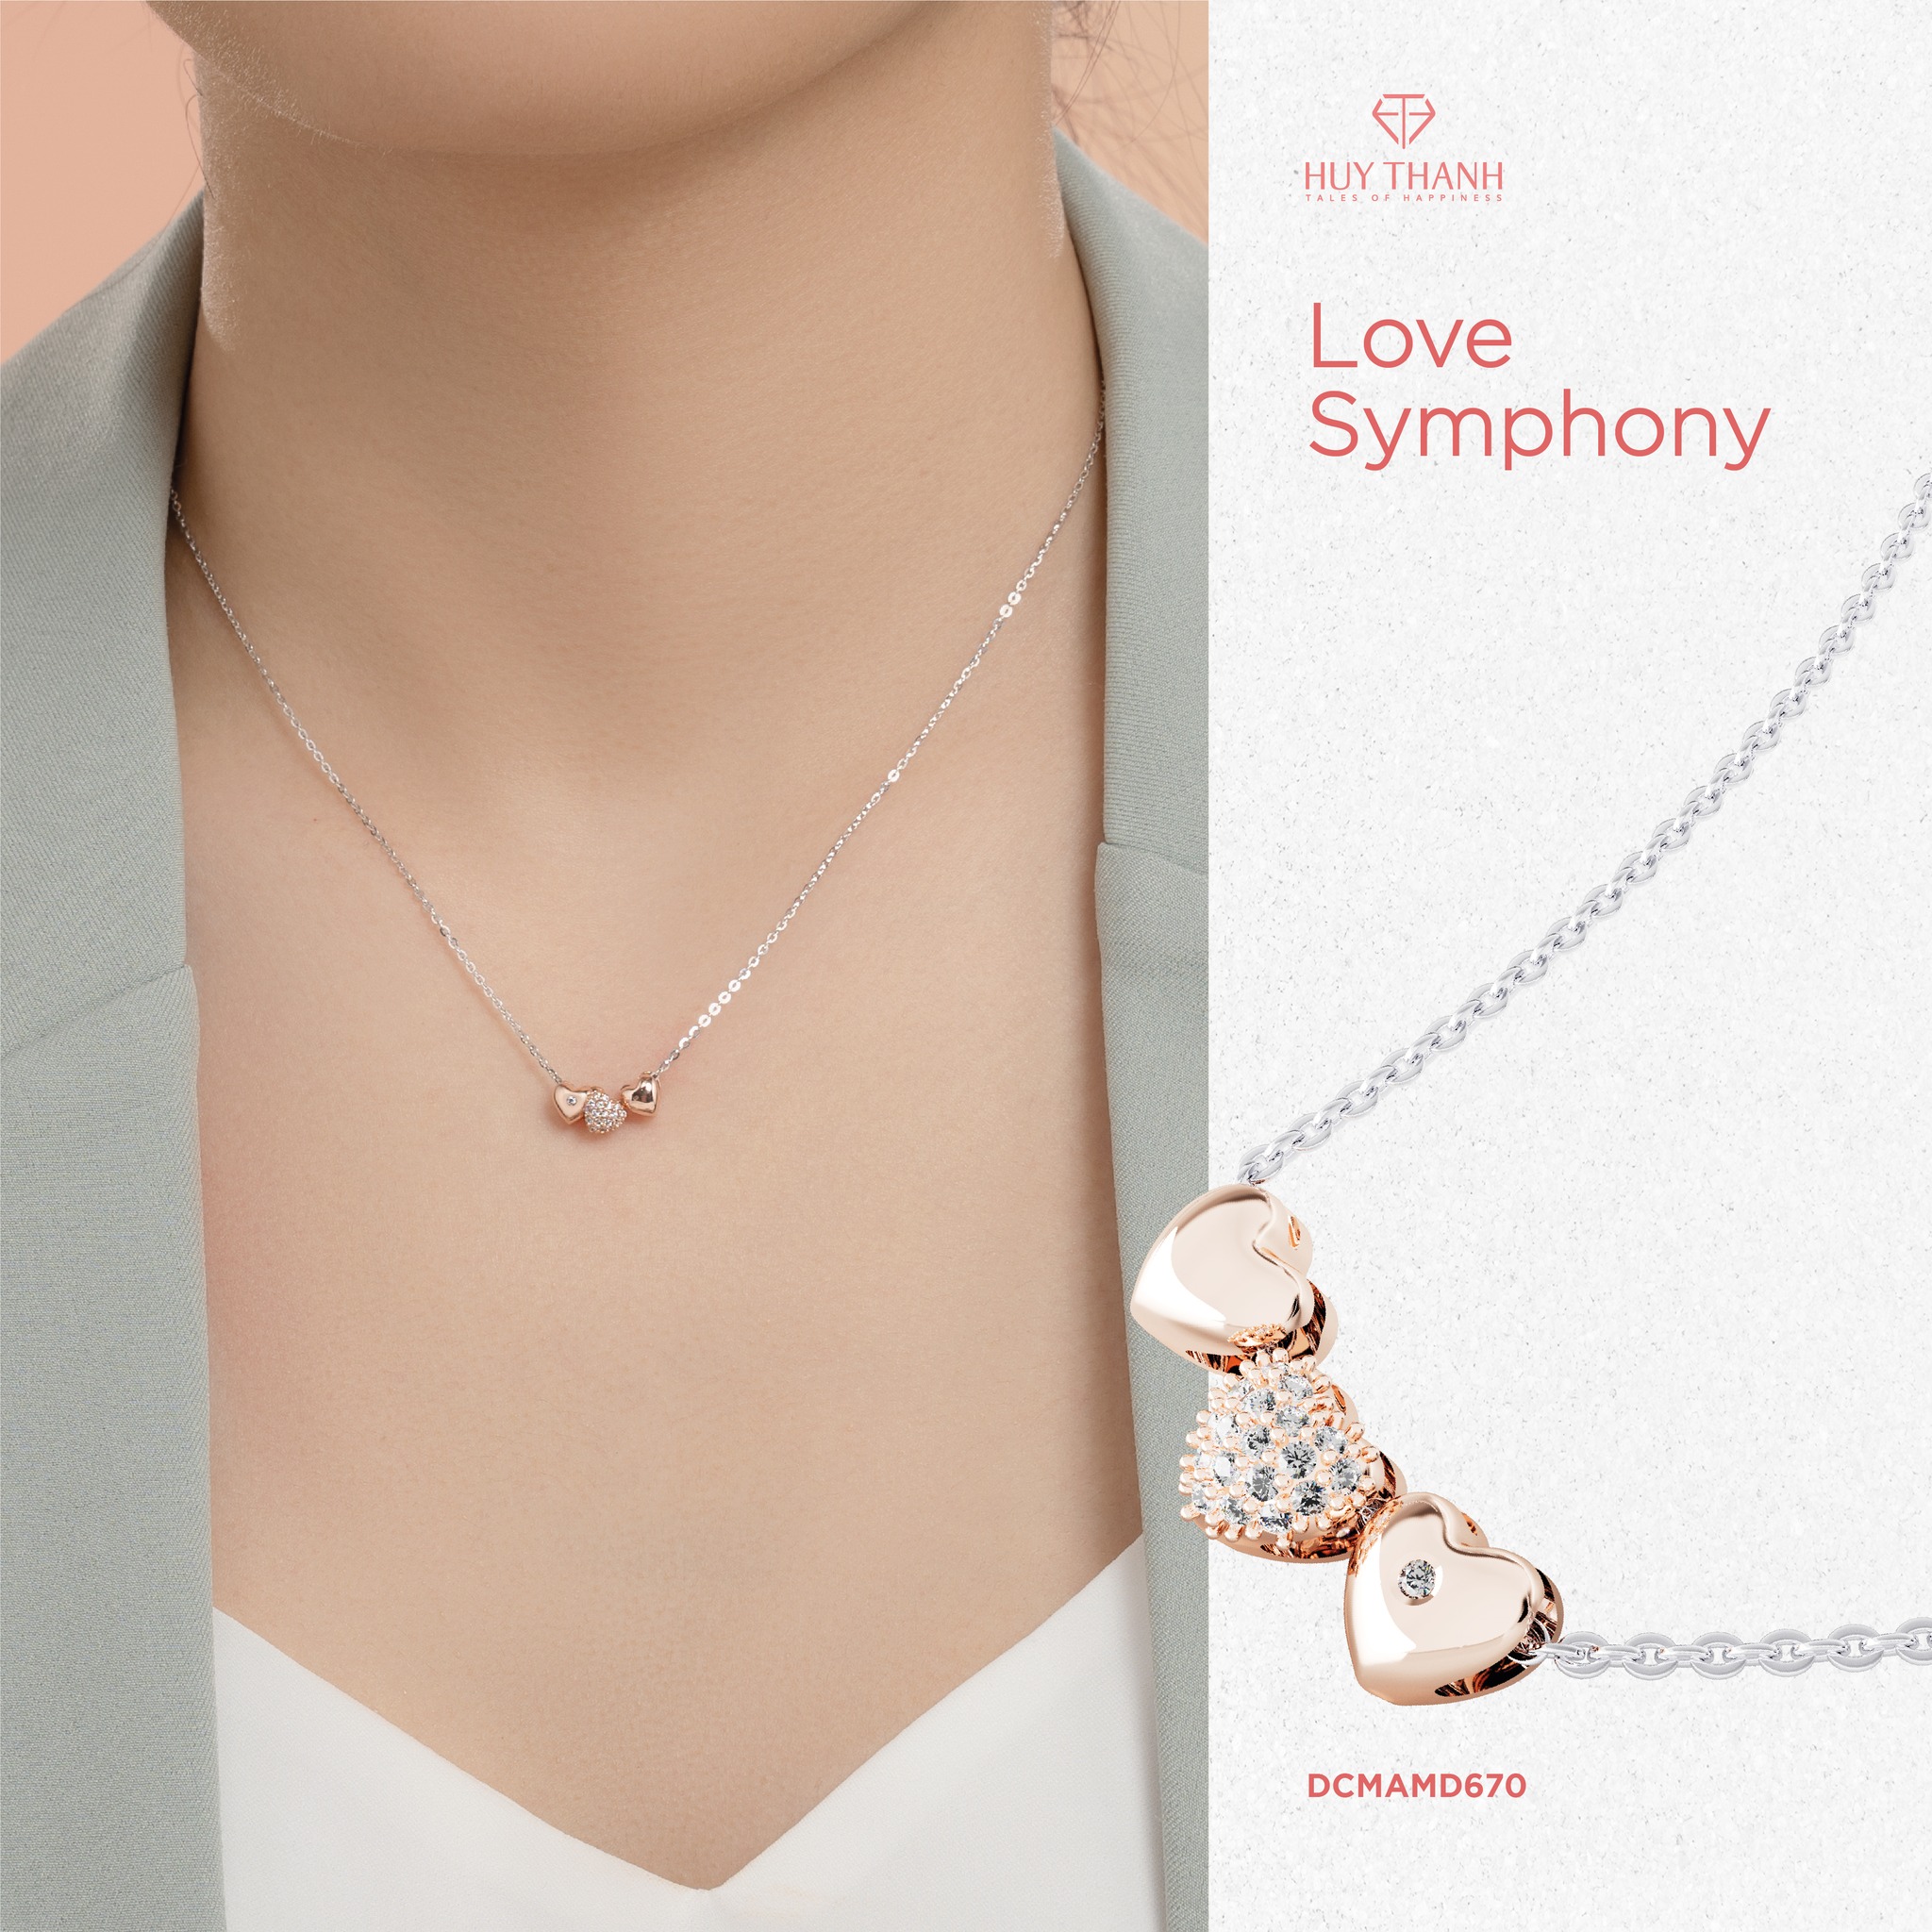 Dây Chuyền Vàng Tây 14k Love Symphony DCMAMD670 Huy Thanh Jewelry